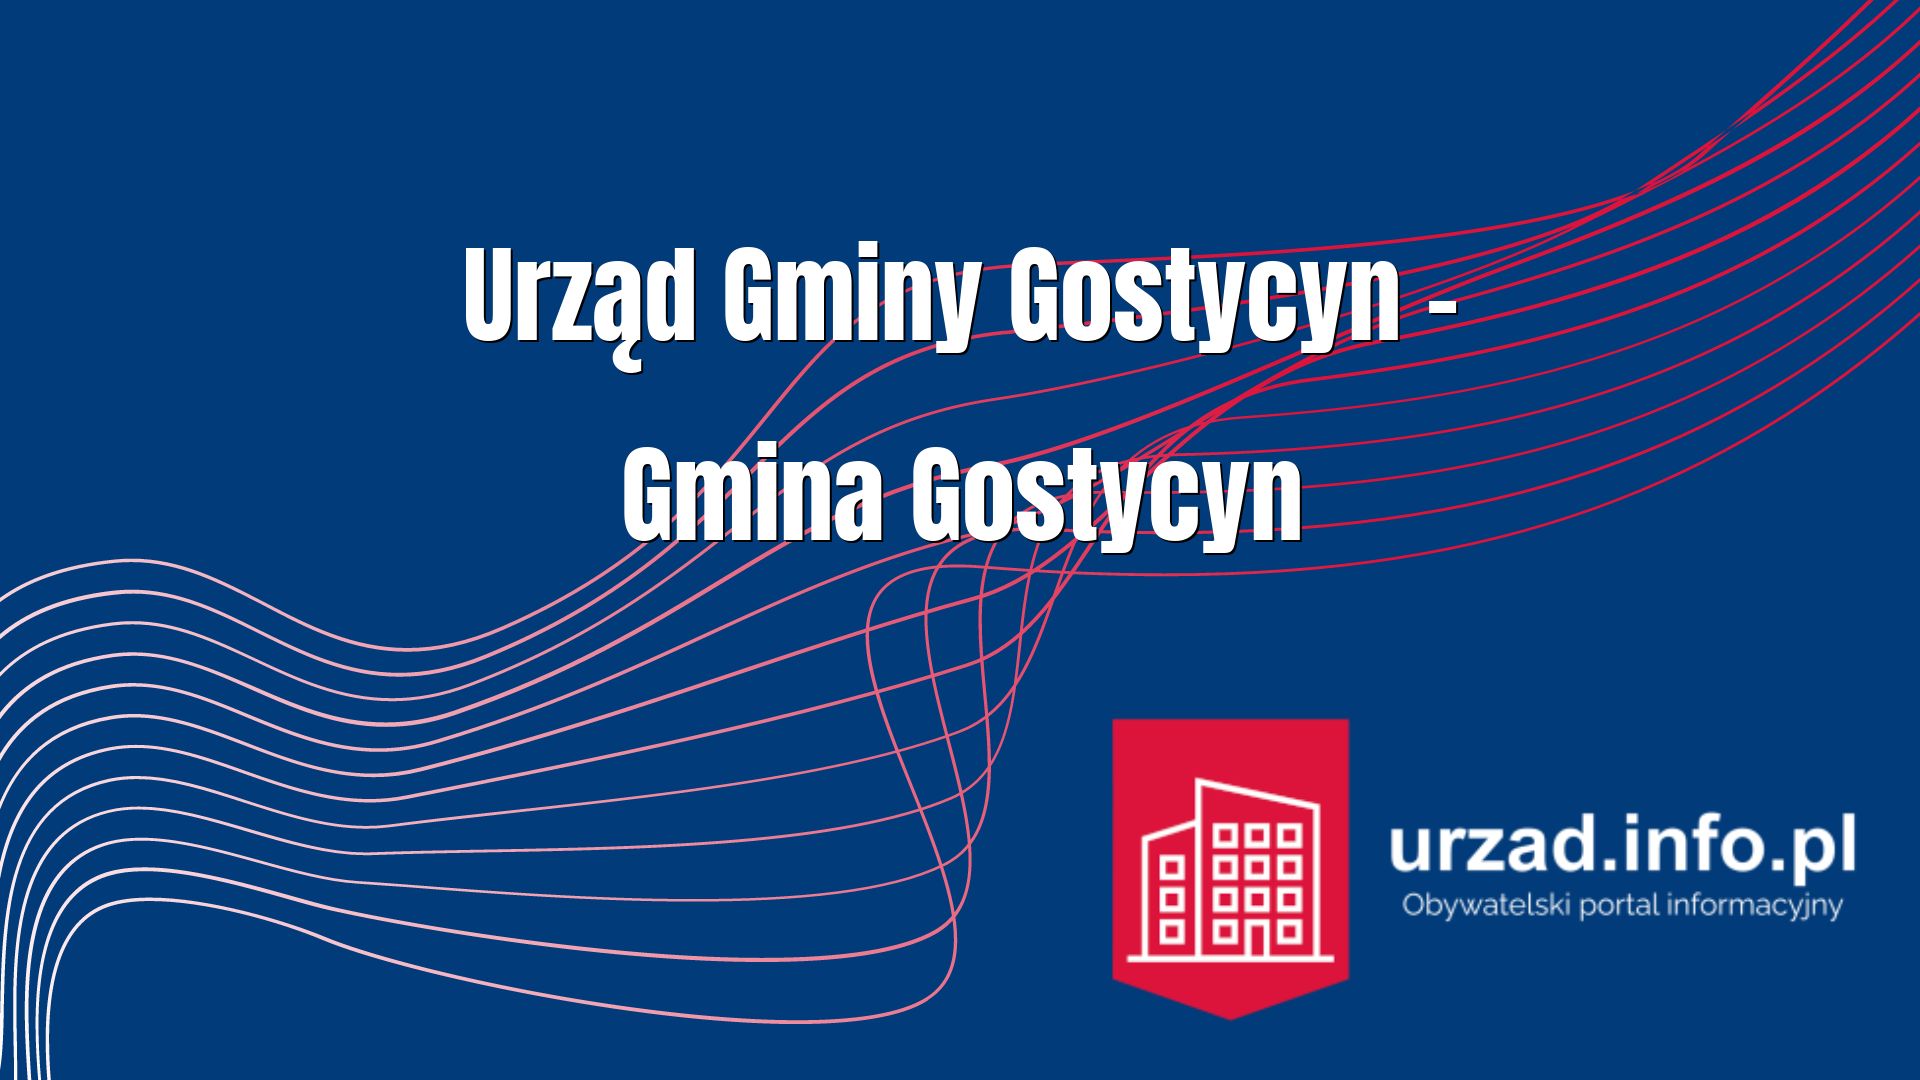 Urząd Gminy Gostycyn – Gmina Gostycyn